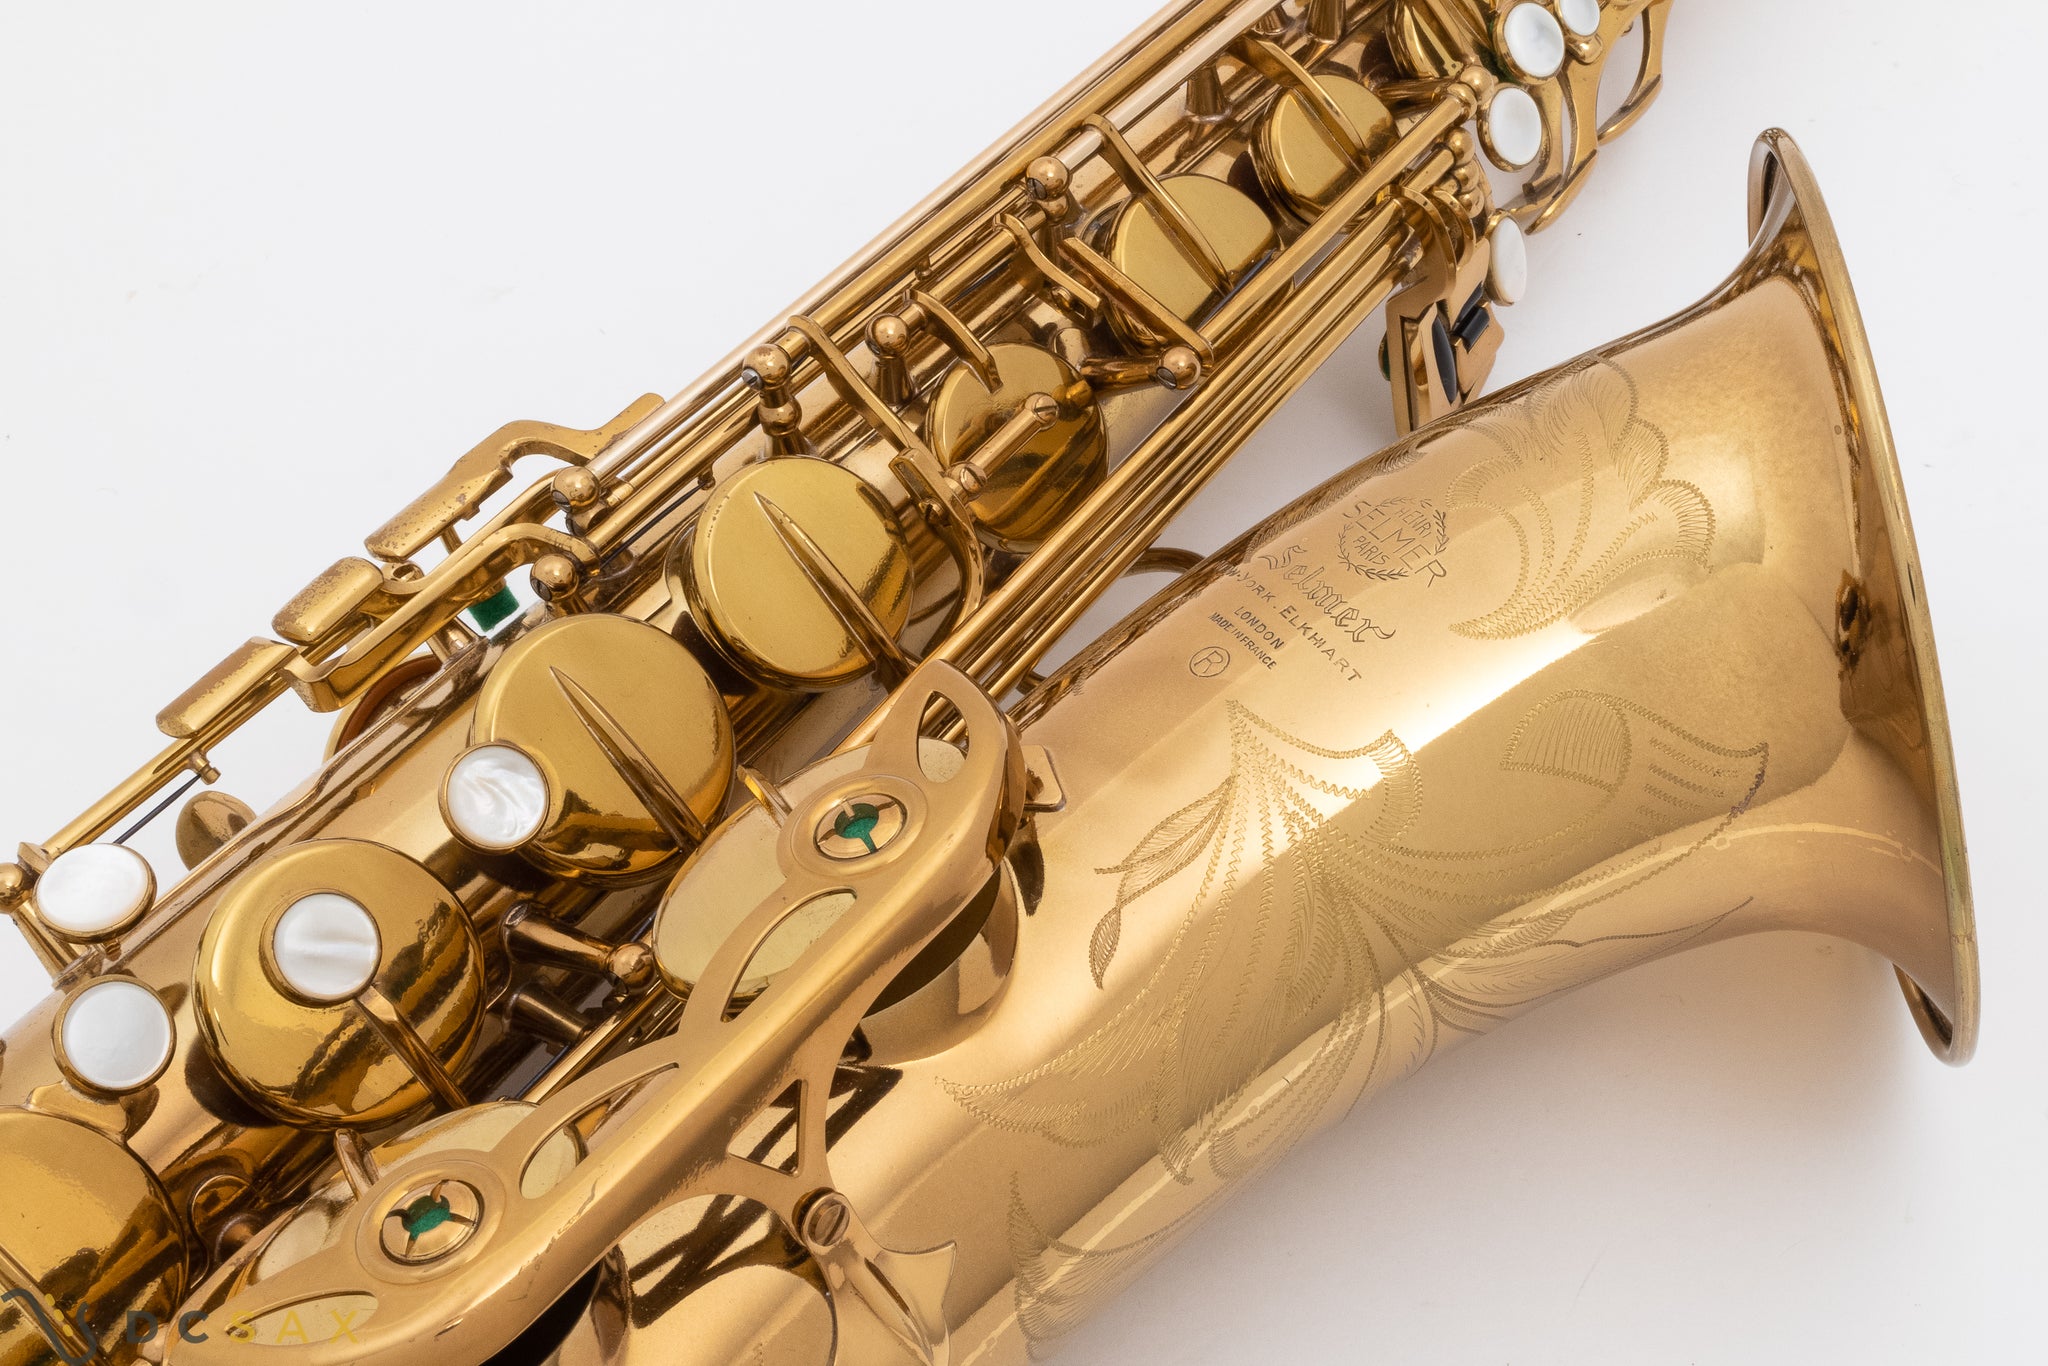 126,xxx Selmer Mark VI Tenor Saxophone 99%+ Original Lacquer